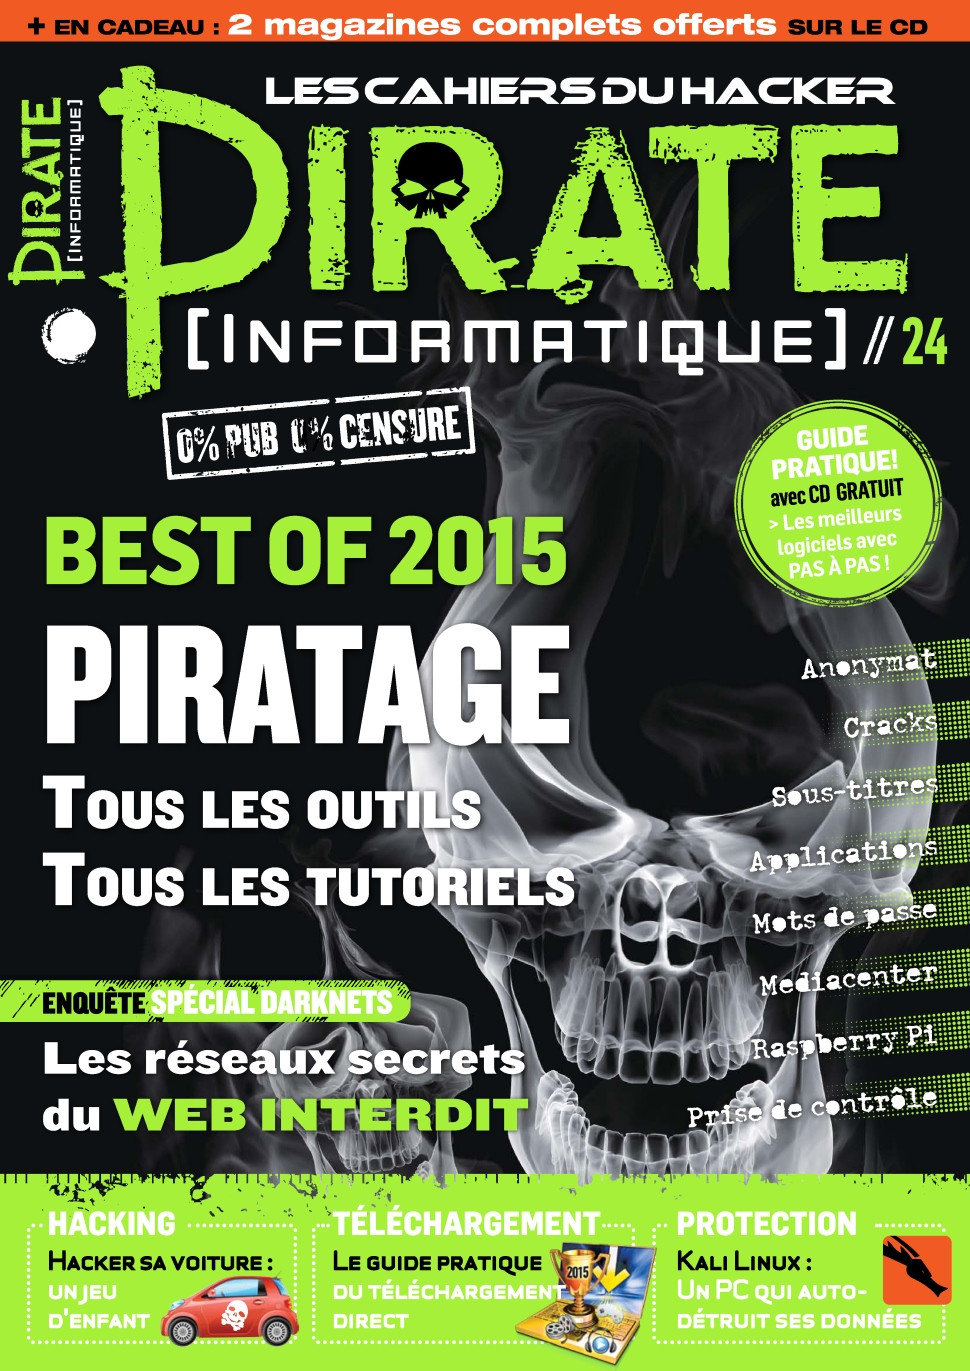 Pirate Informatique No.24 - Janvier-Février 2014